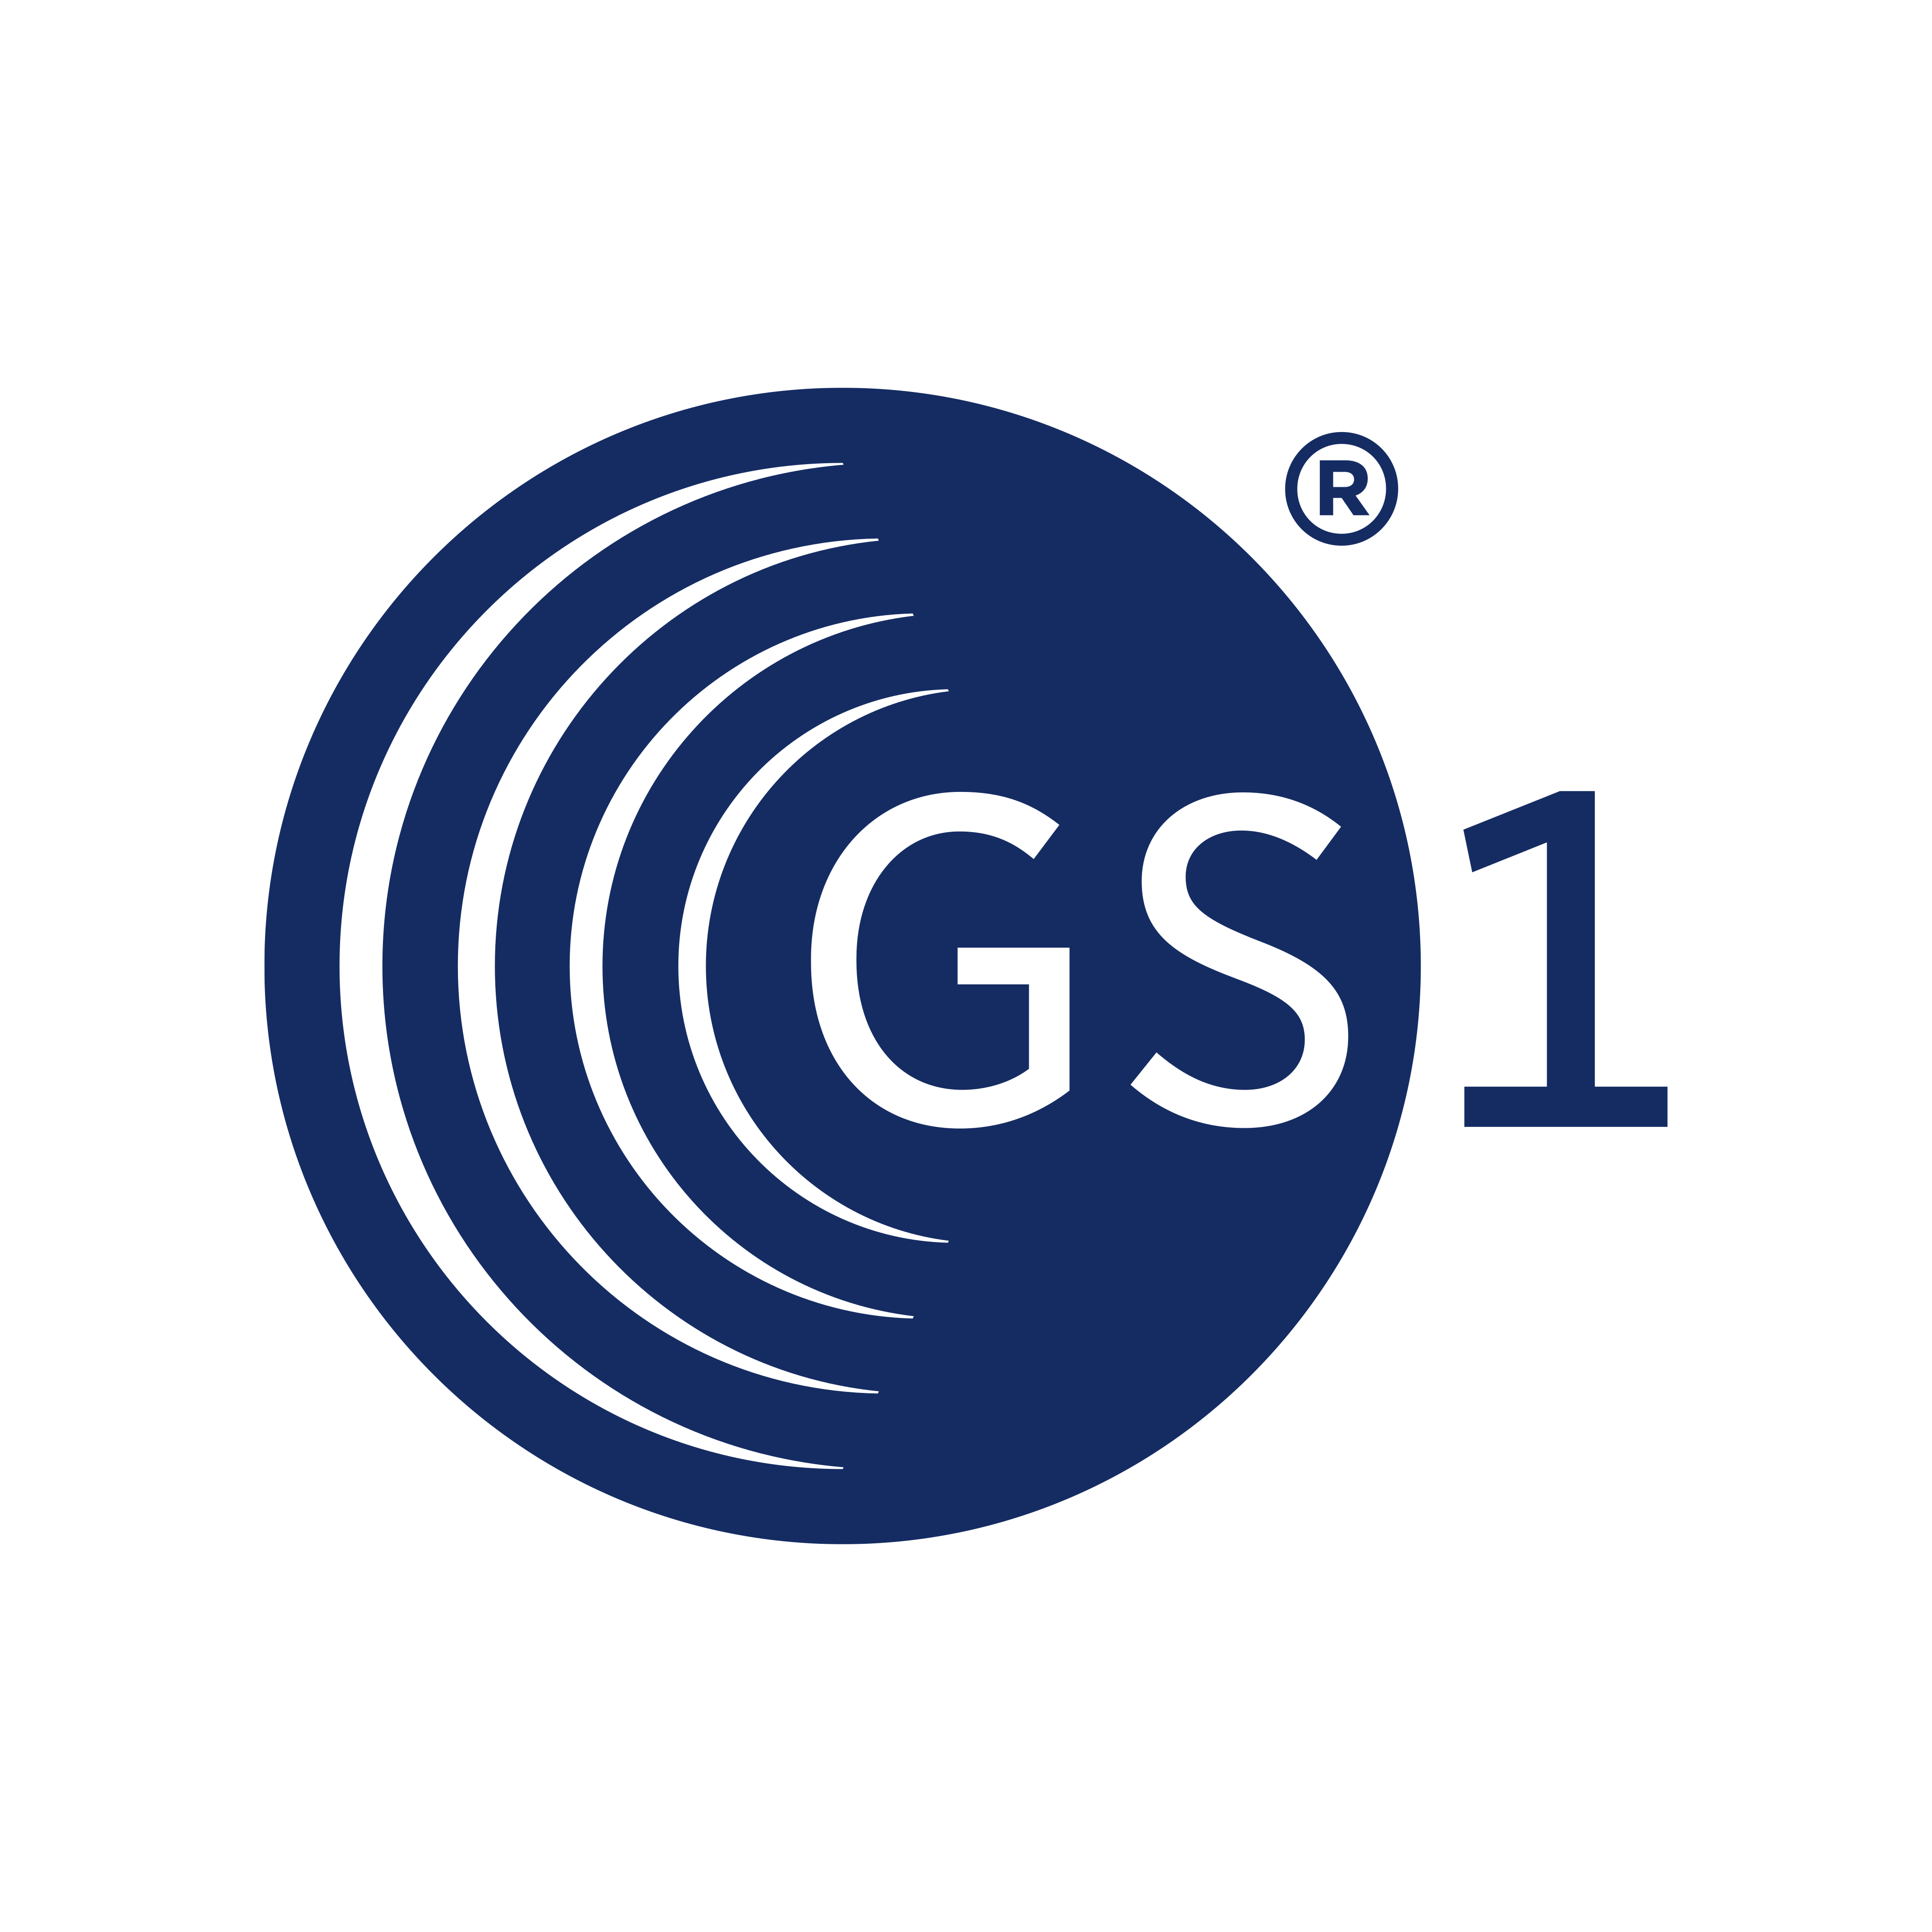 gs1 logo 0 - GS1 Logo